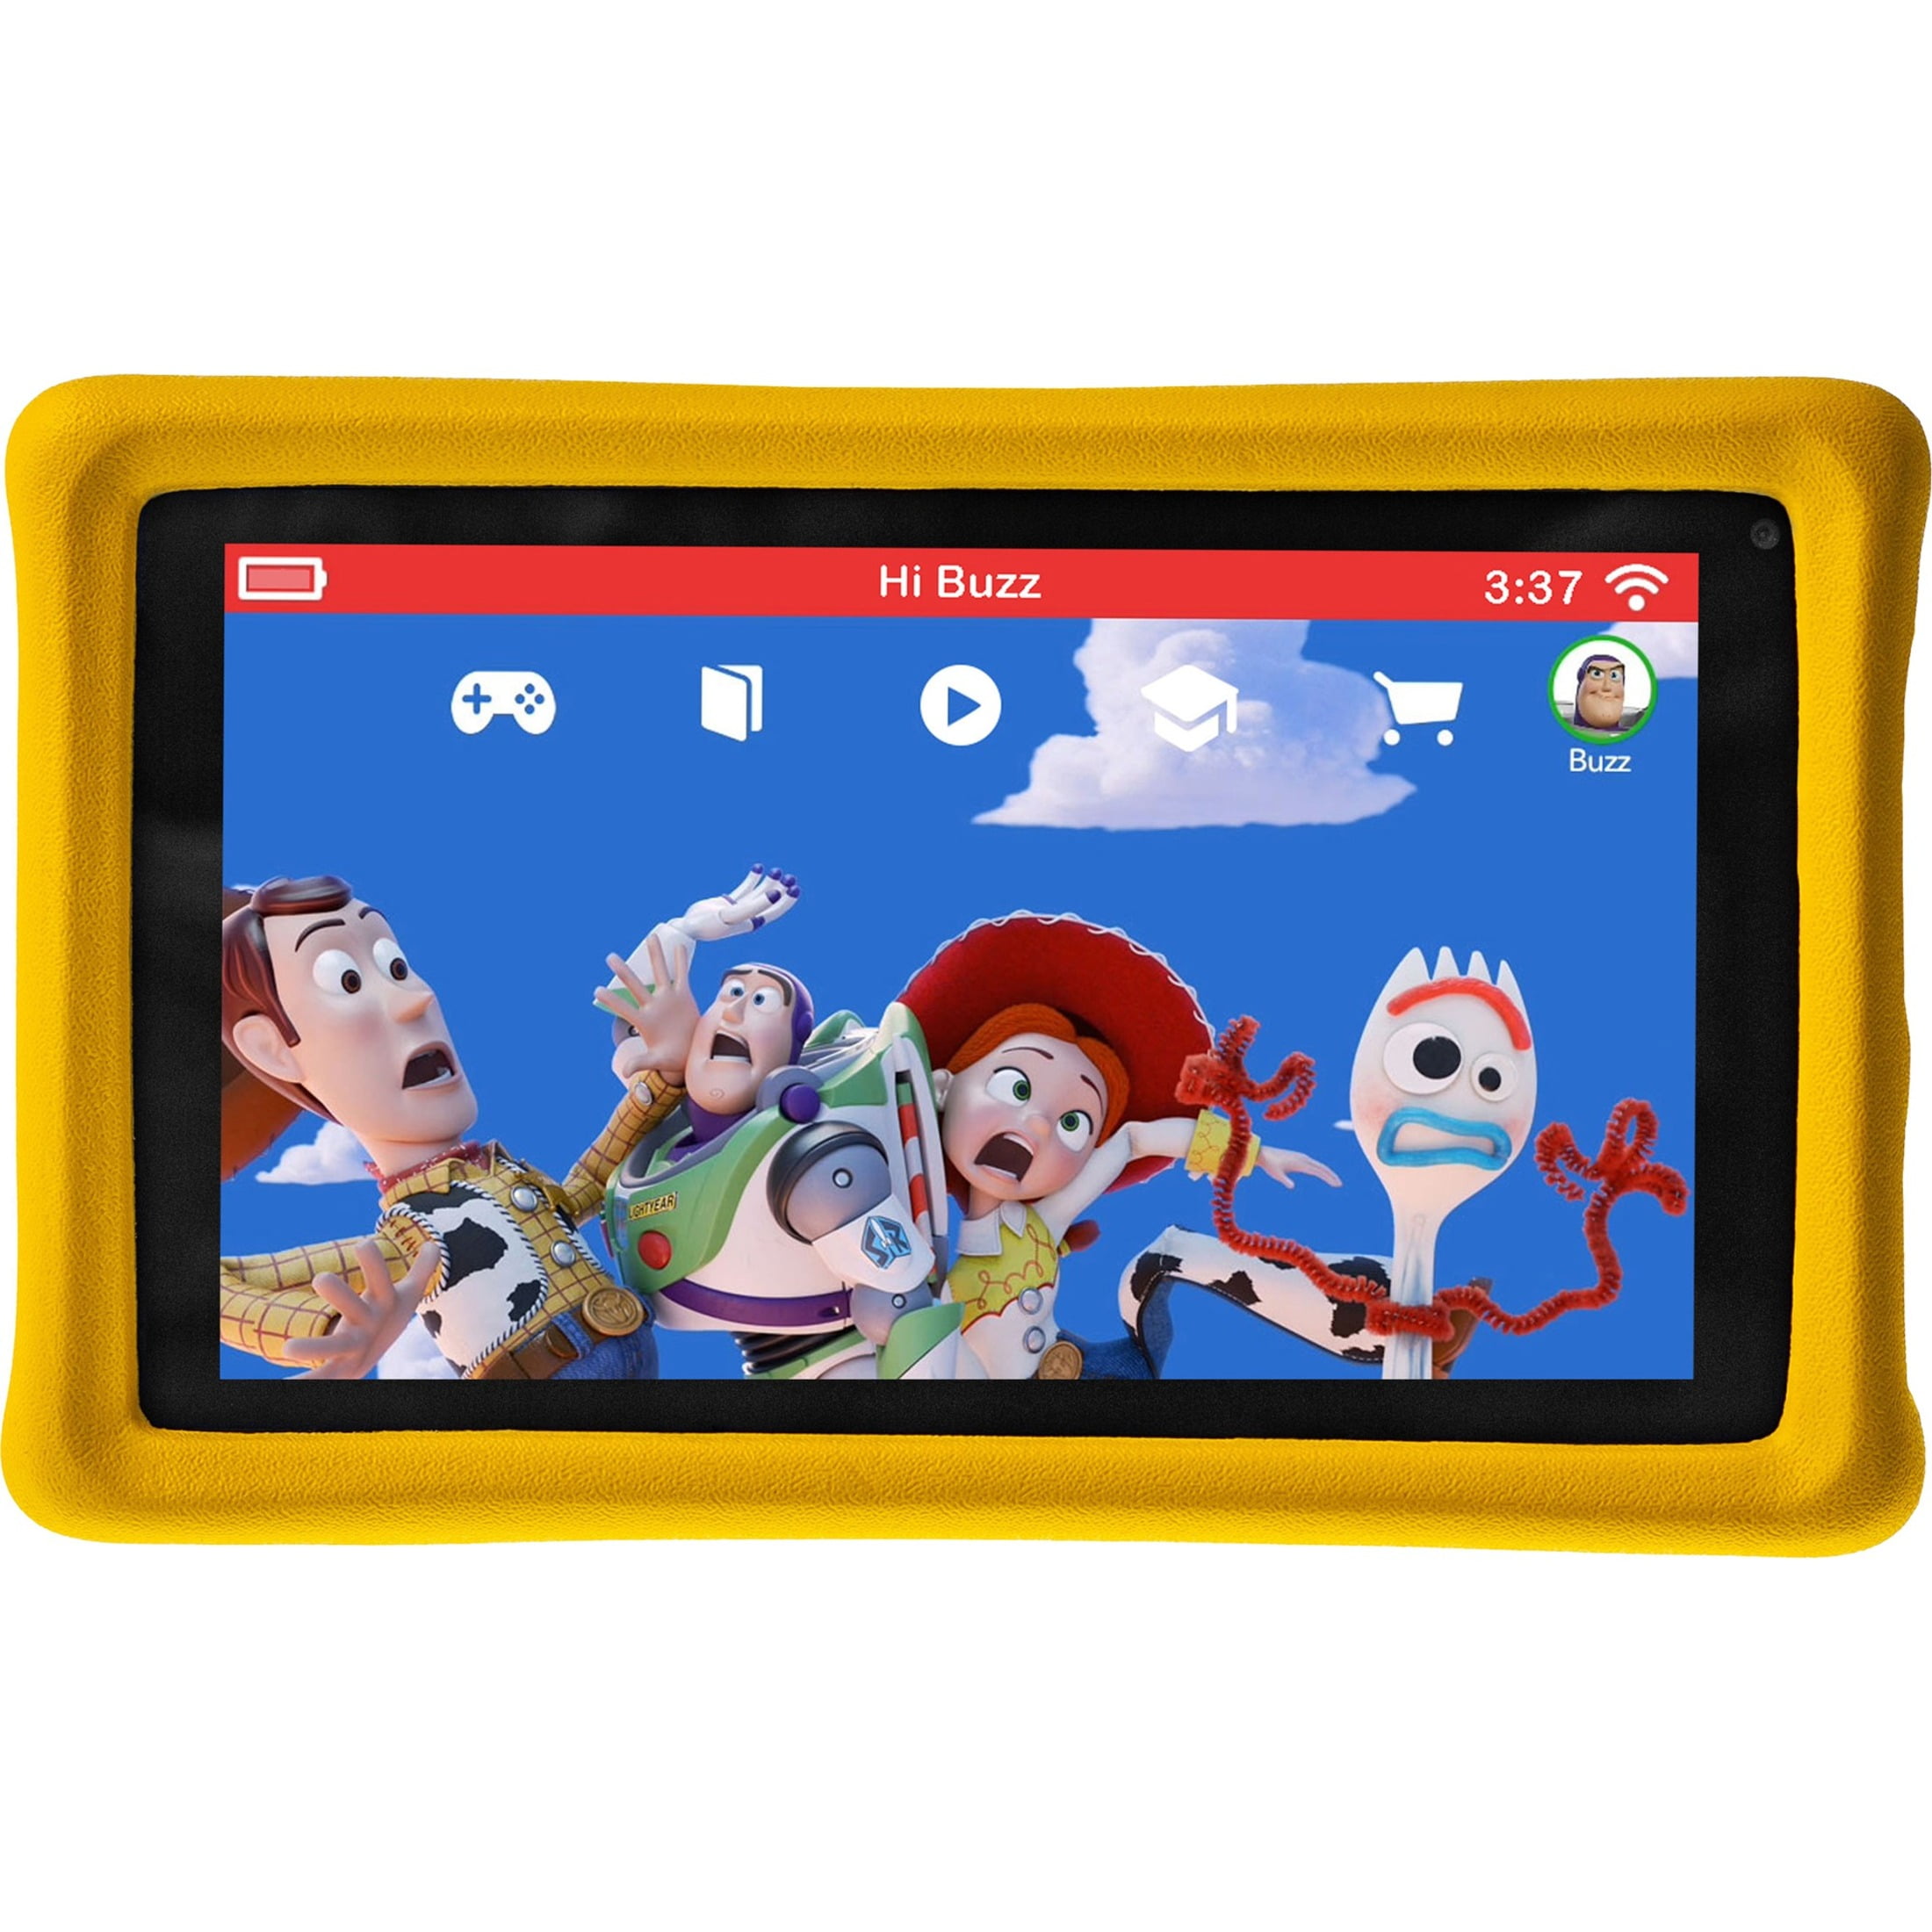 Pebble Gear 7” Kids Tablet – Disney/Pixar Histoire de Jouets 4 Tablette Applications et E-Books 500 Jeux boîtier Pare-Chocs conçu pour Enfants contrôle Parental HD Display 16 GB Wi-FI 